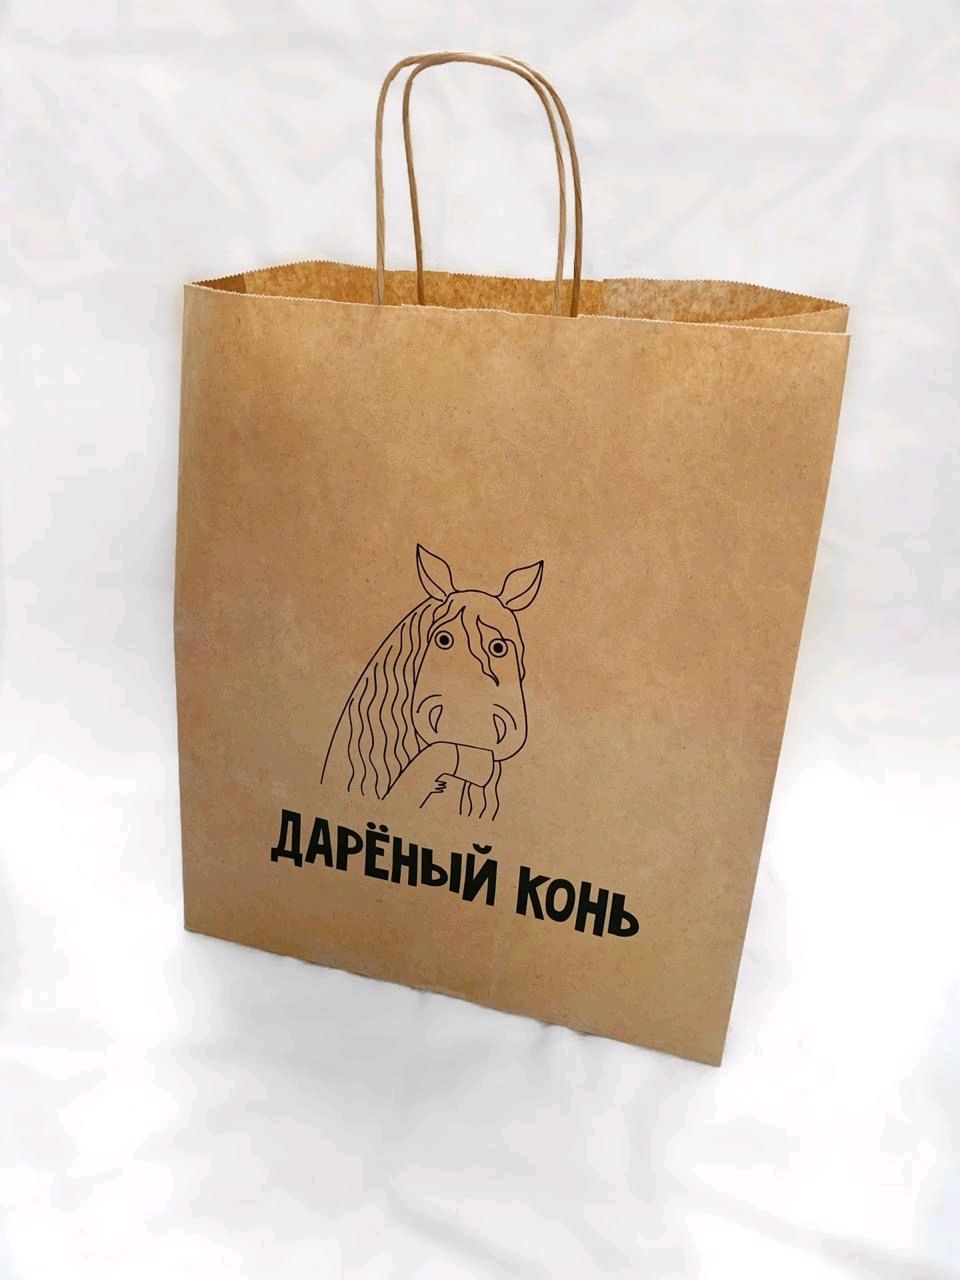 Поговорка дареному коню в зубы. Пакет дареный конь. Пакет подарочный лошадь. Смешные подарочные пакеты. Надпись на пакете.